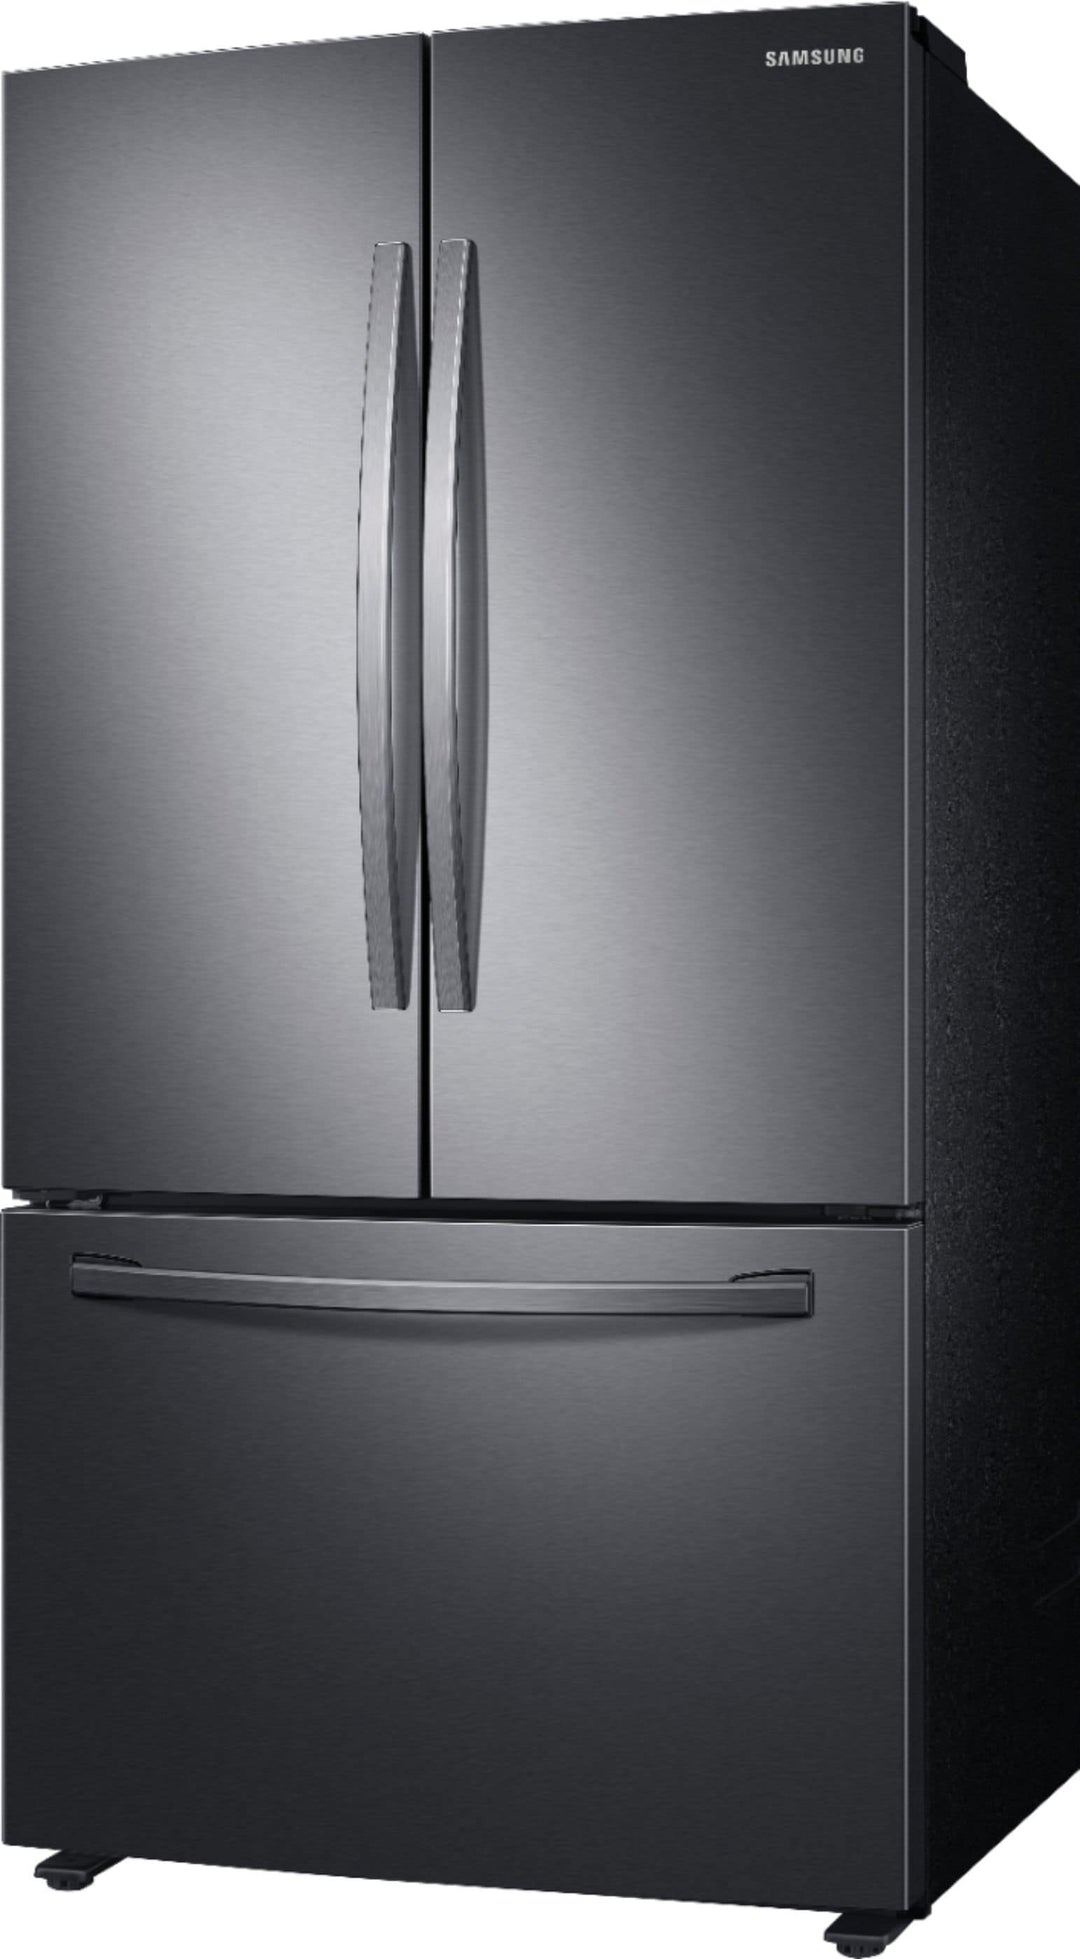 Samsung - 28 cu. ft. Large Capacity 3-Door French Door Refrigerator - Black stainless steel_4